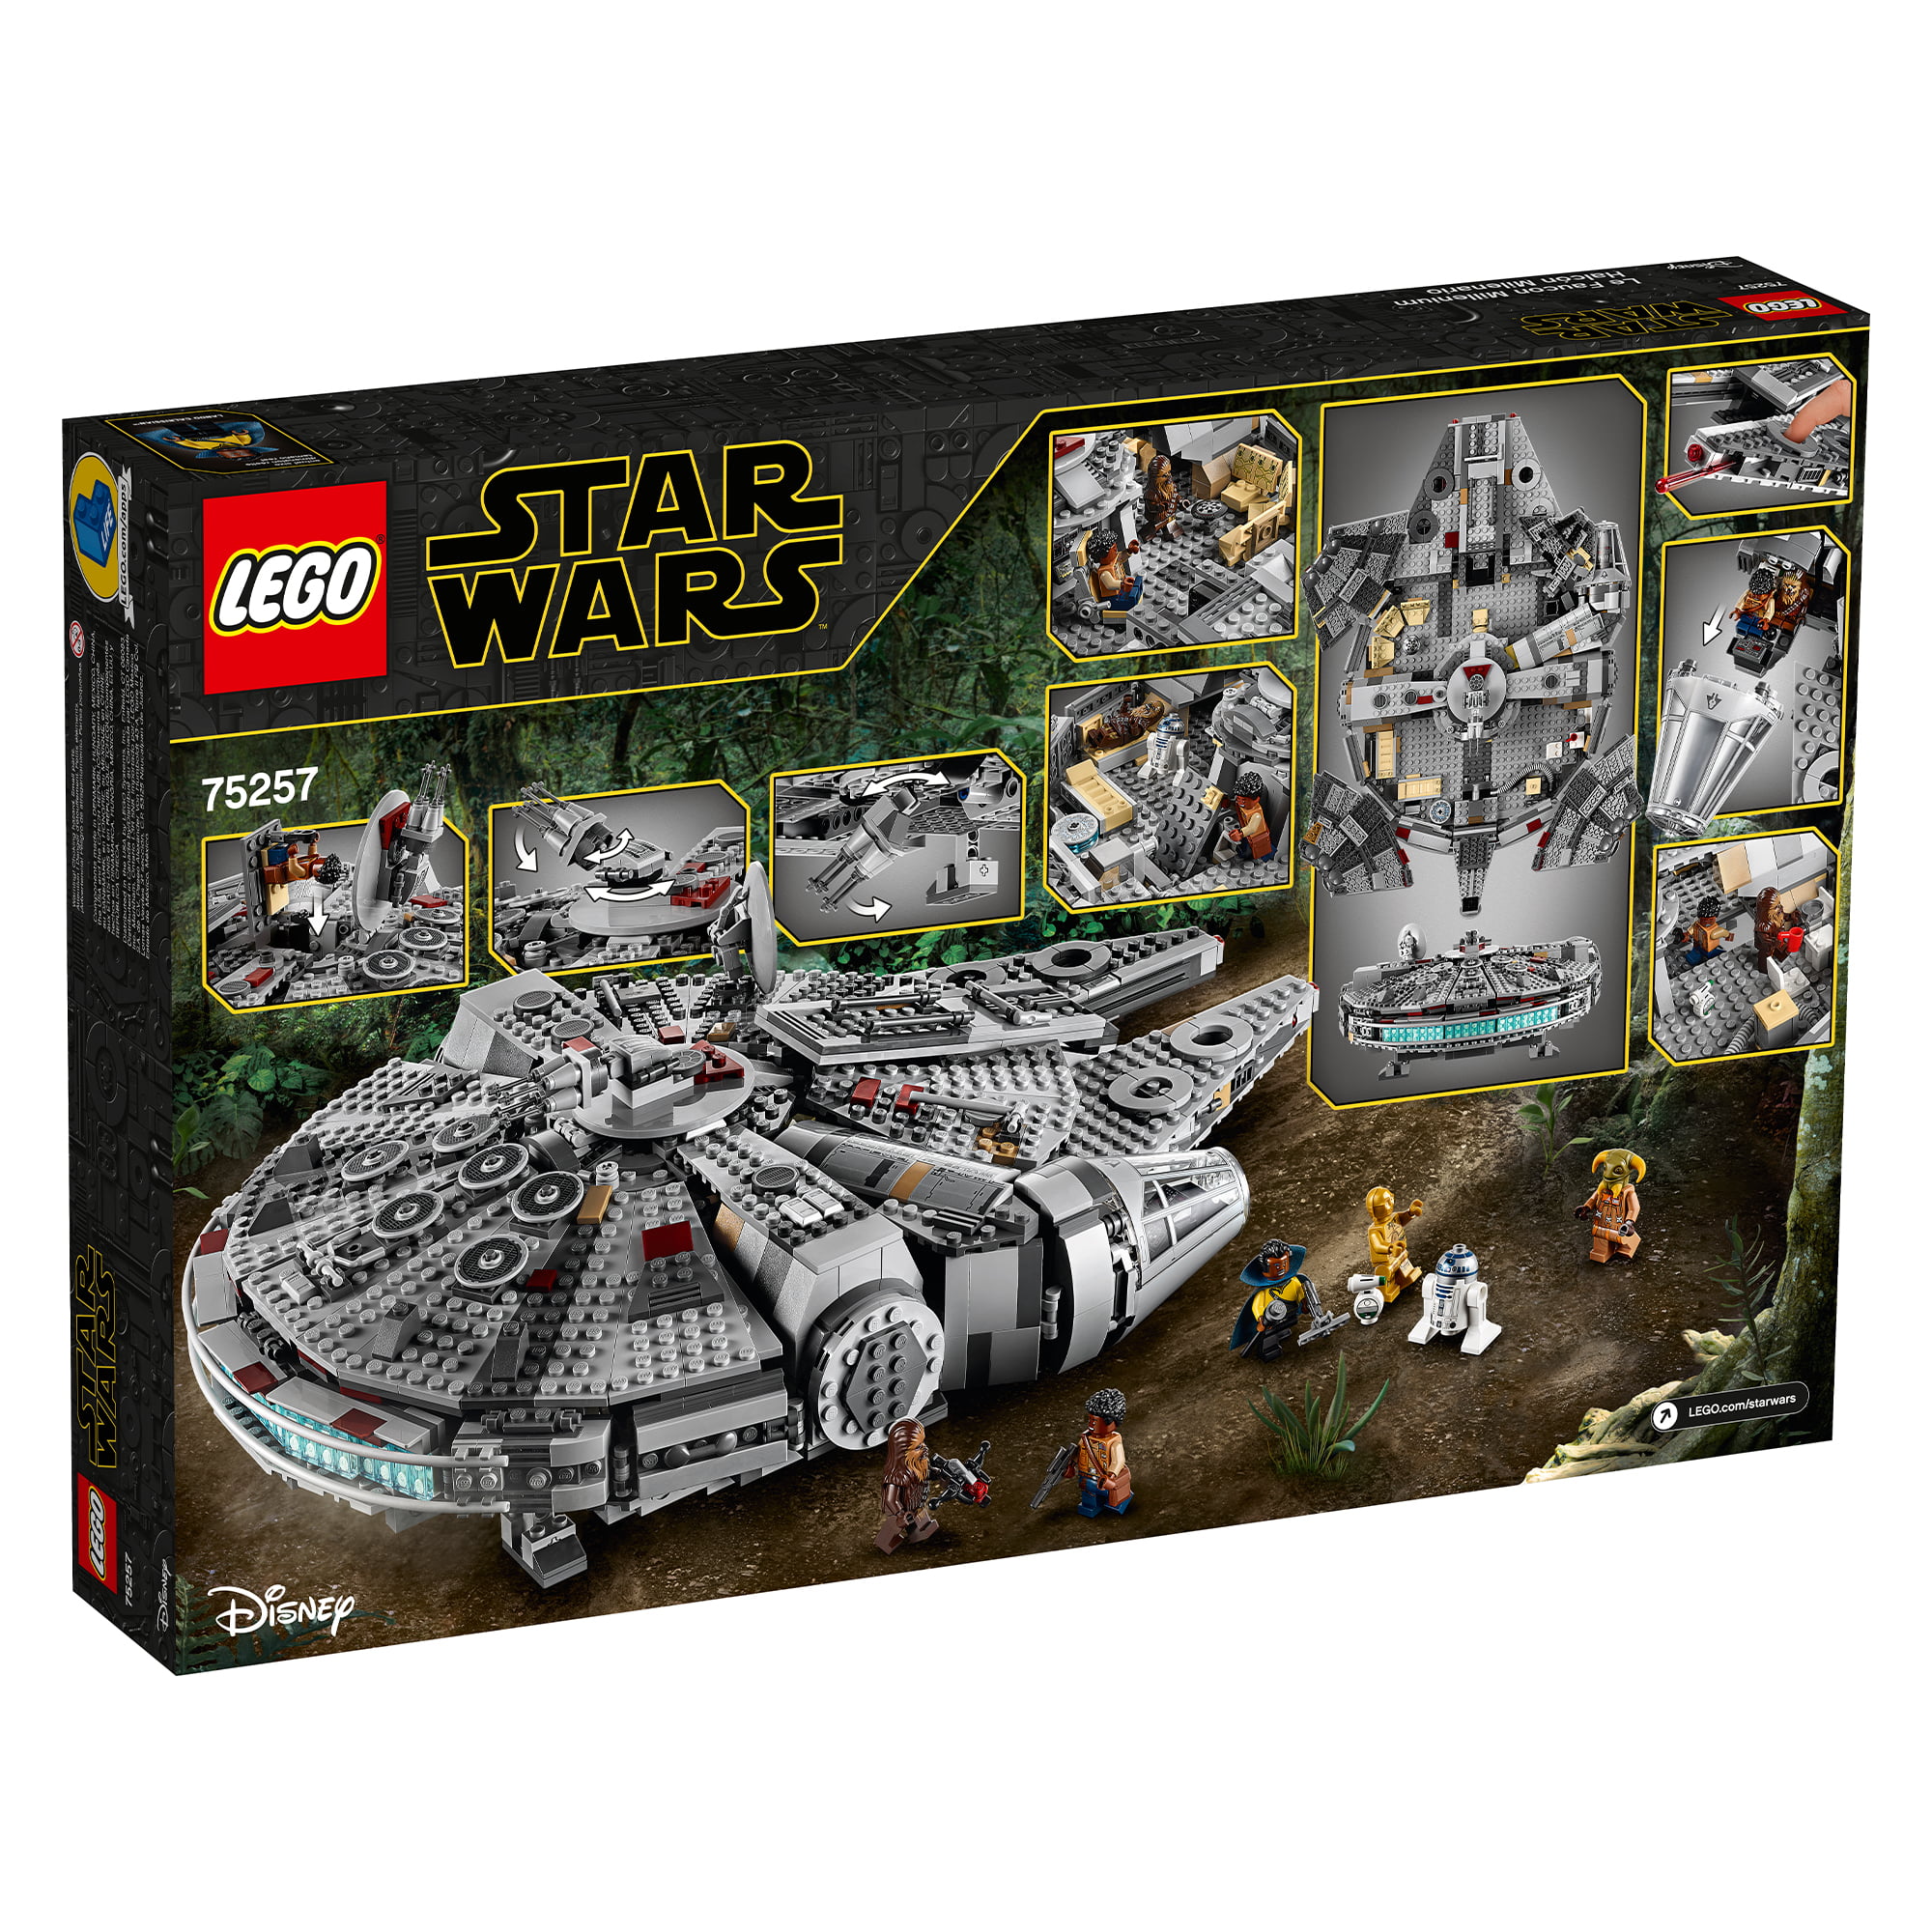 Udlevering Gør livet det samme LEGO Star Wars: The Rise of Skywalker Millennium Falcon 75257 Starship  Model Building Kit and Minifigures (1,351 Pieces) - Walmart.com